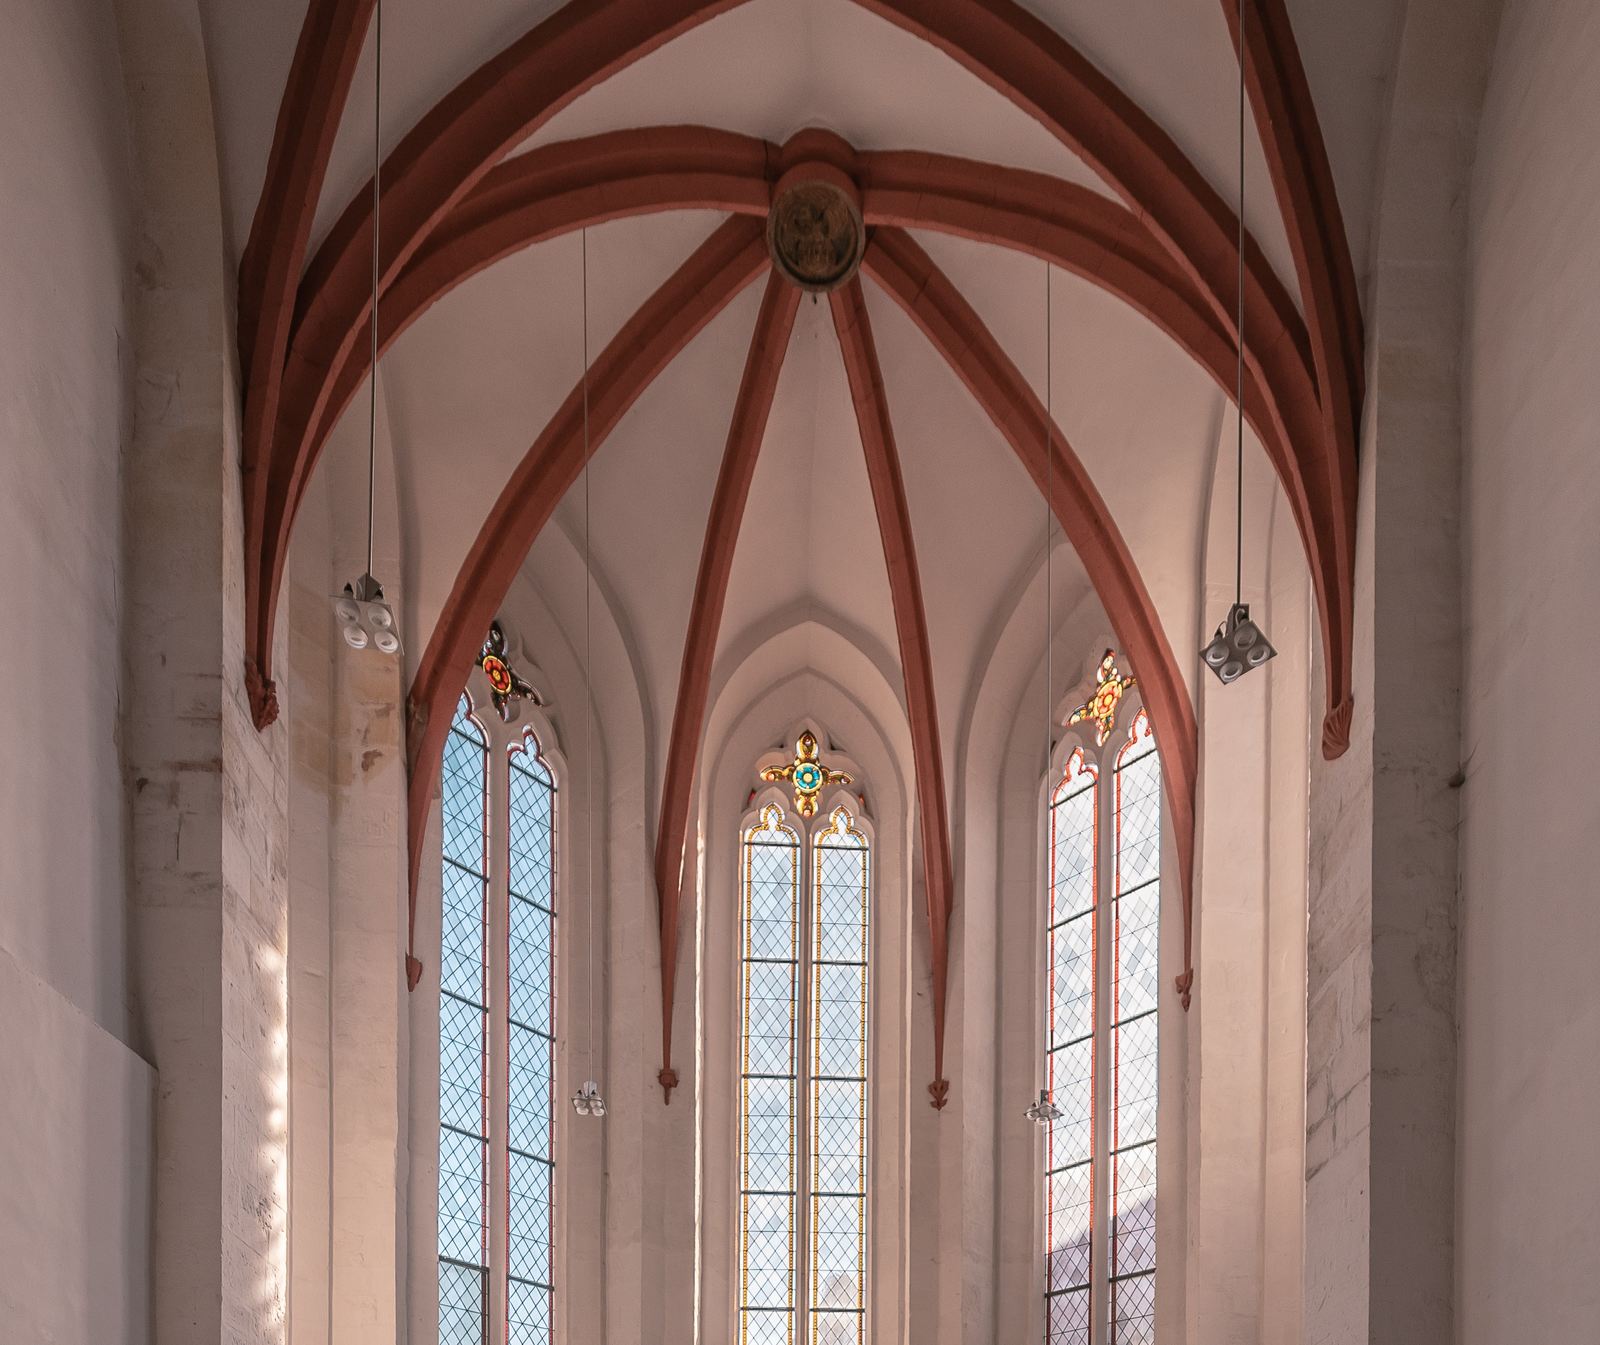 St. Mary's Church interior